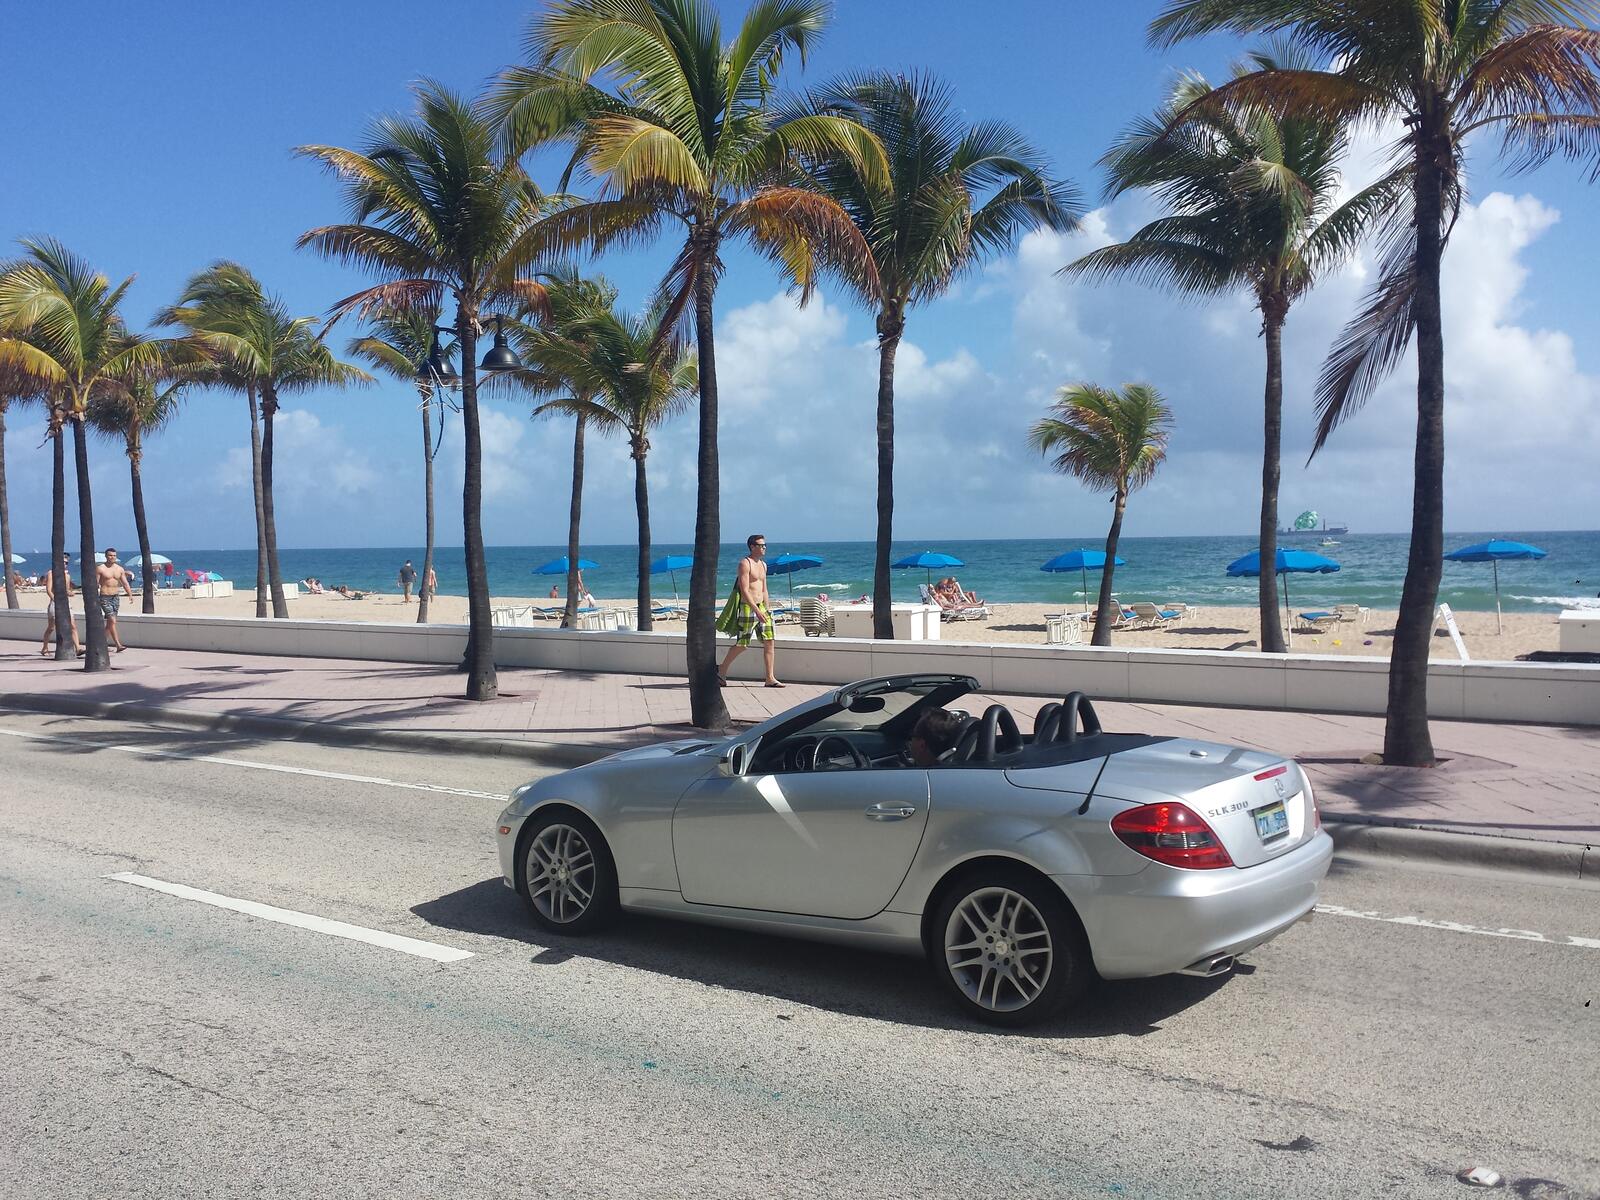 Бесплатное фото Mercedes кабриолет проезжает рядом с пляжем и пальмами